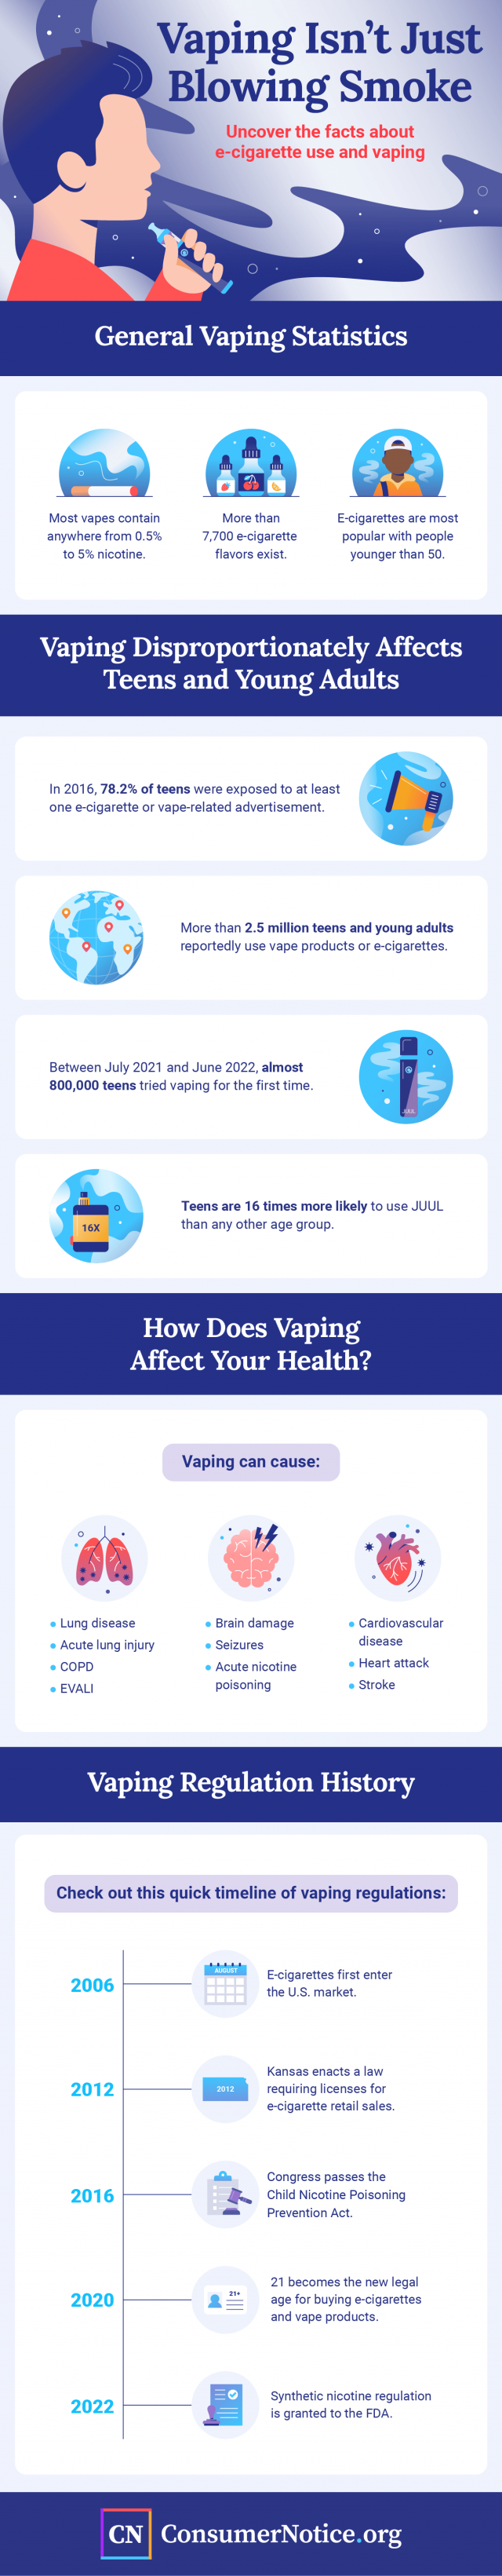 Vaping isn't just blowing smoke infographic